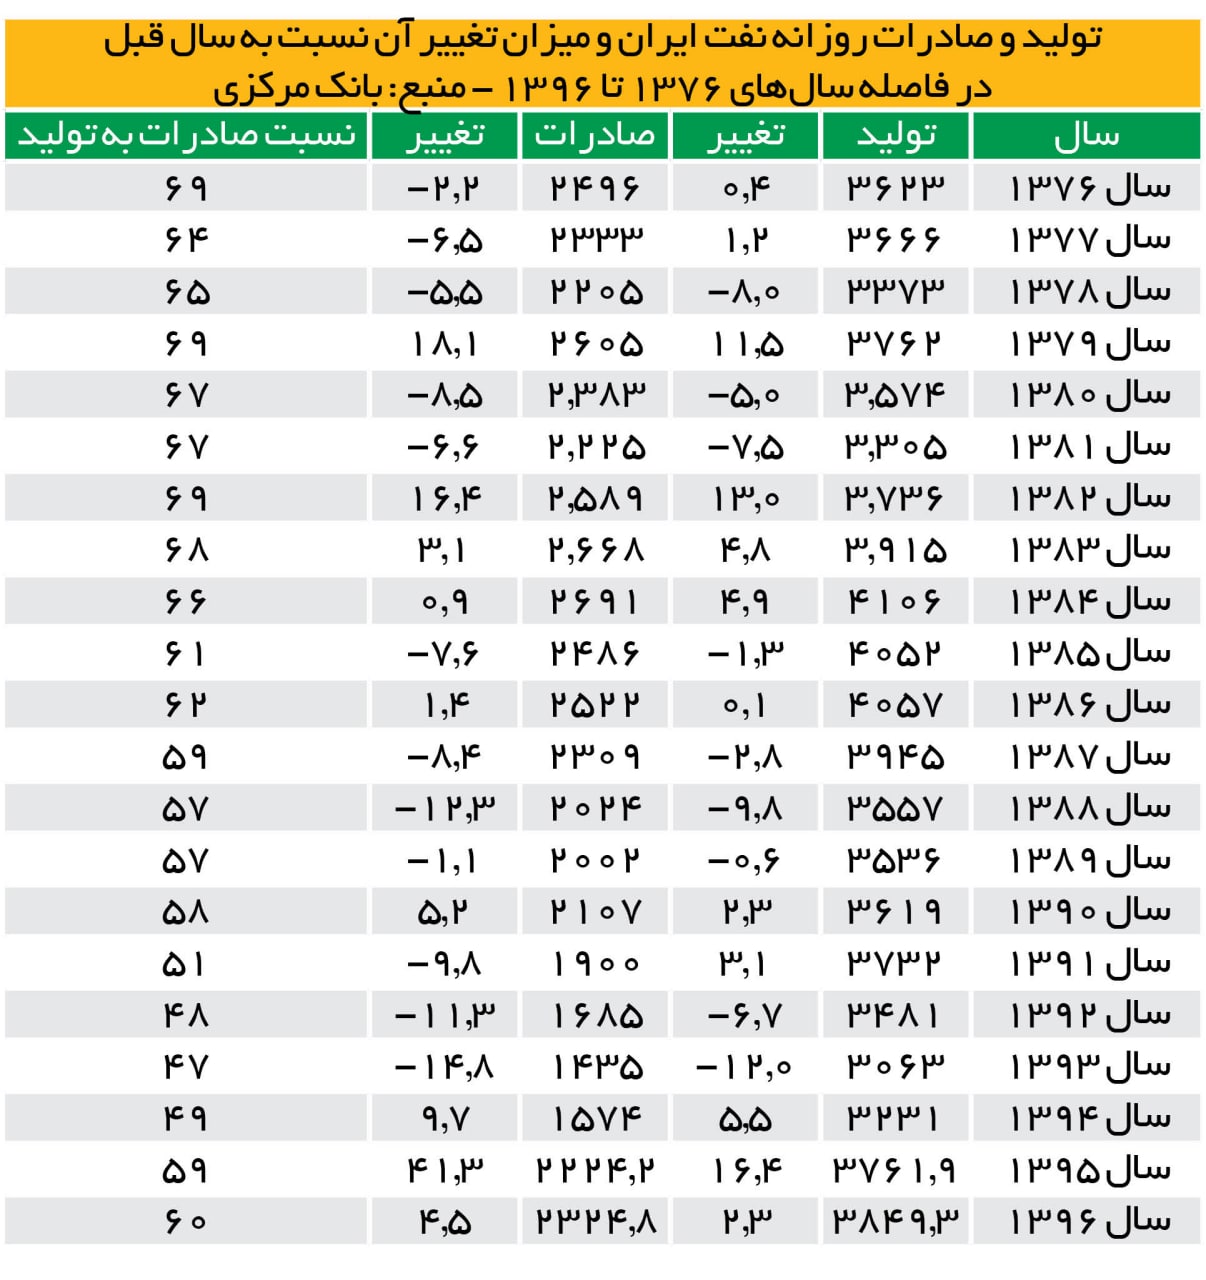 منبع جدول: روزنامه همشهری